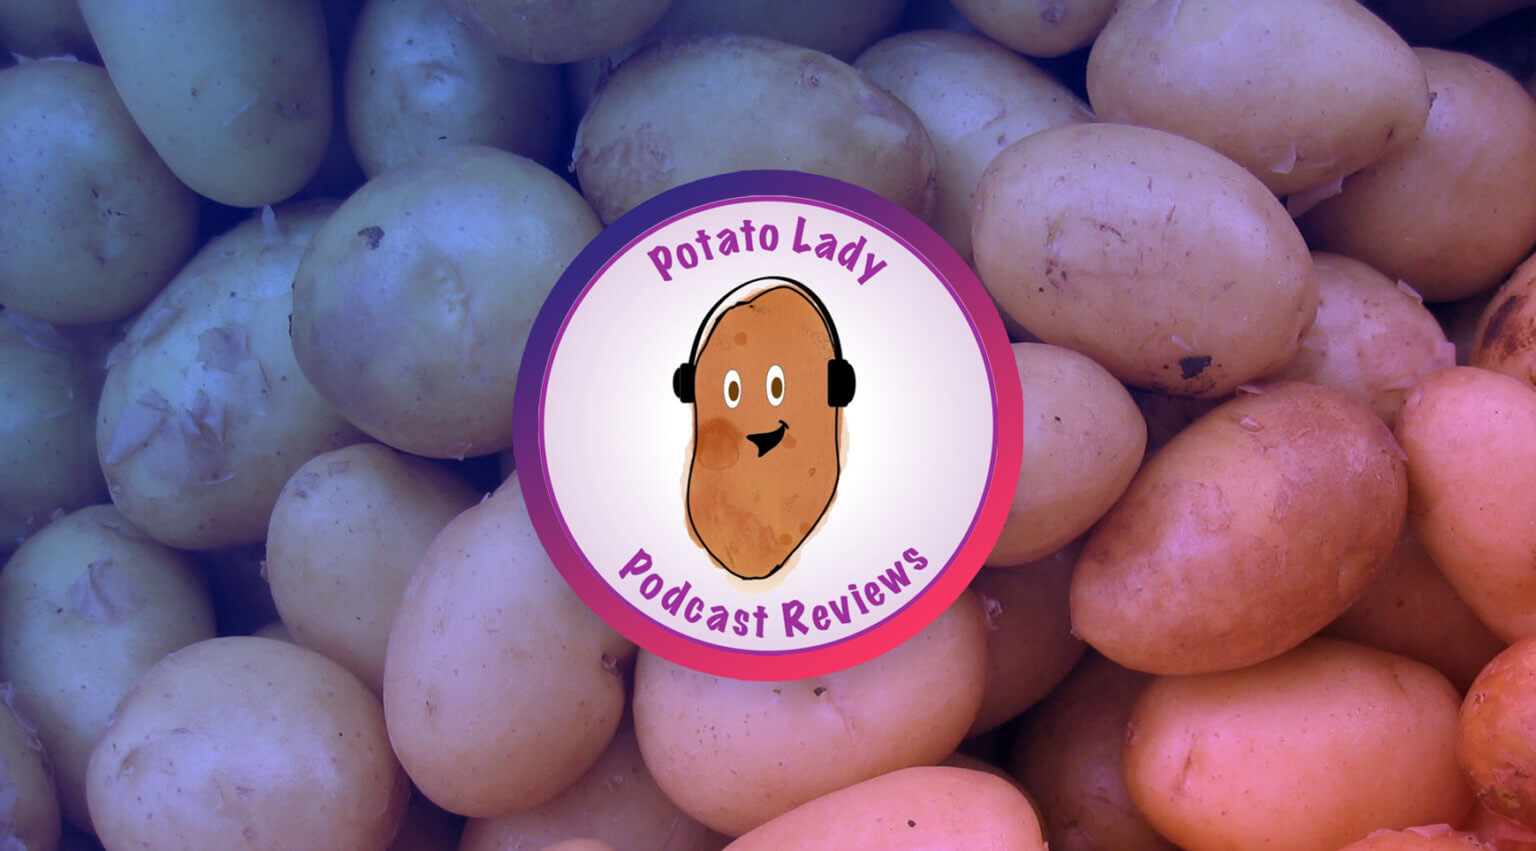 Tastemaker Spotlight: Potato Lady Reviews